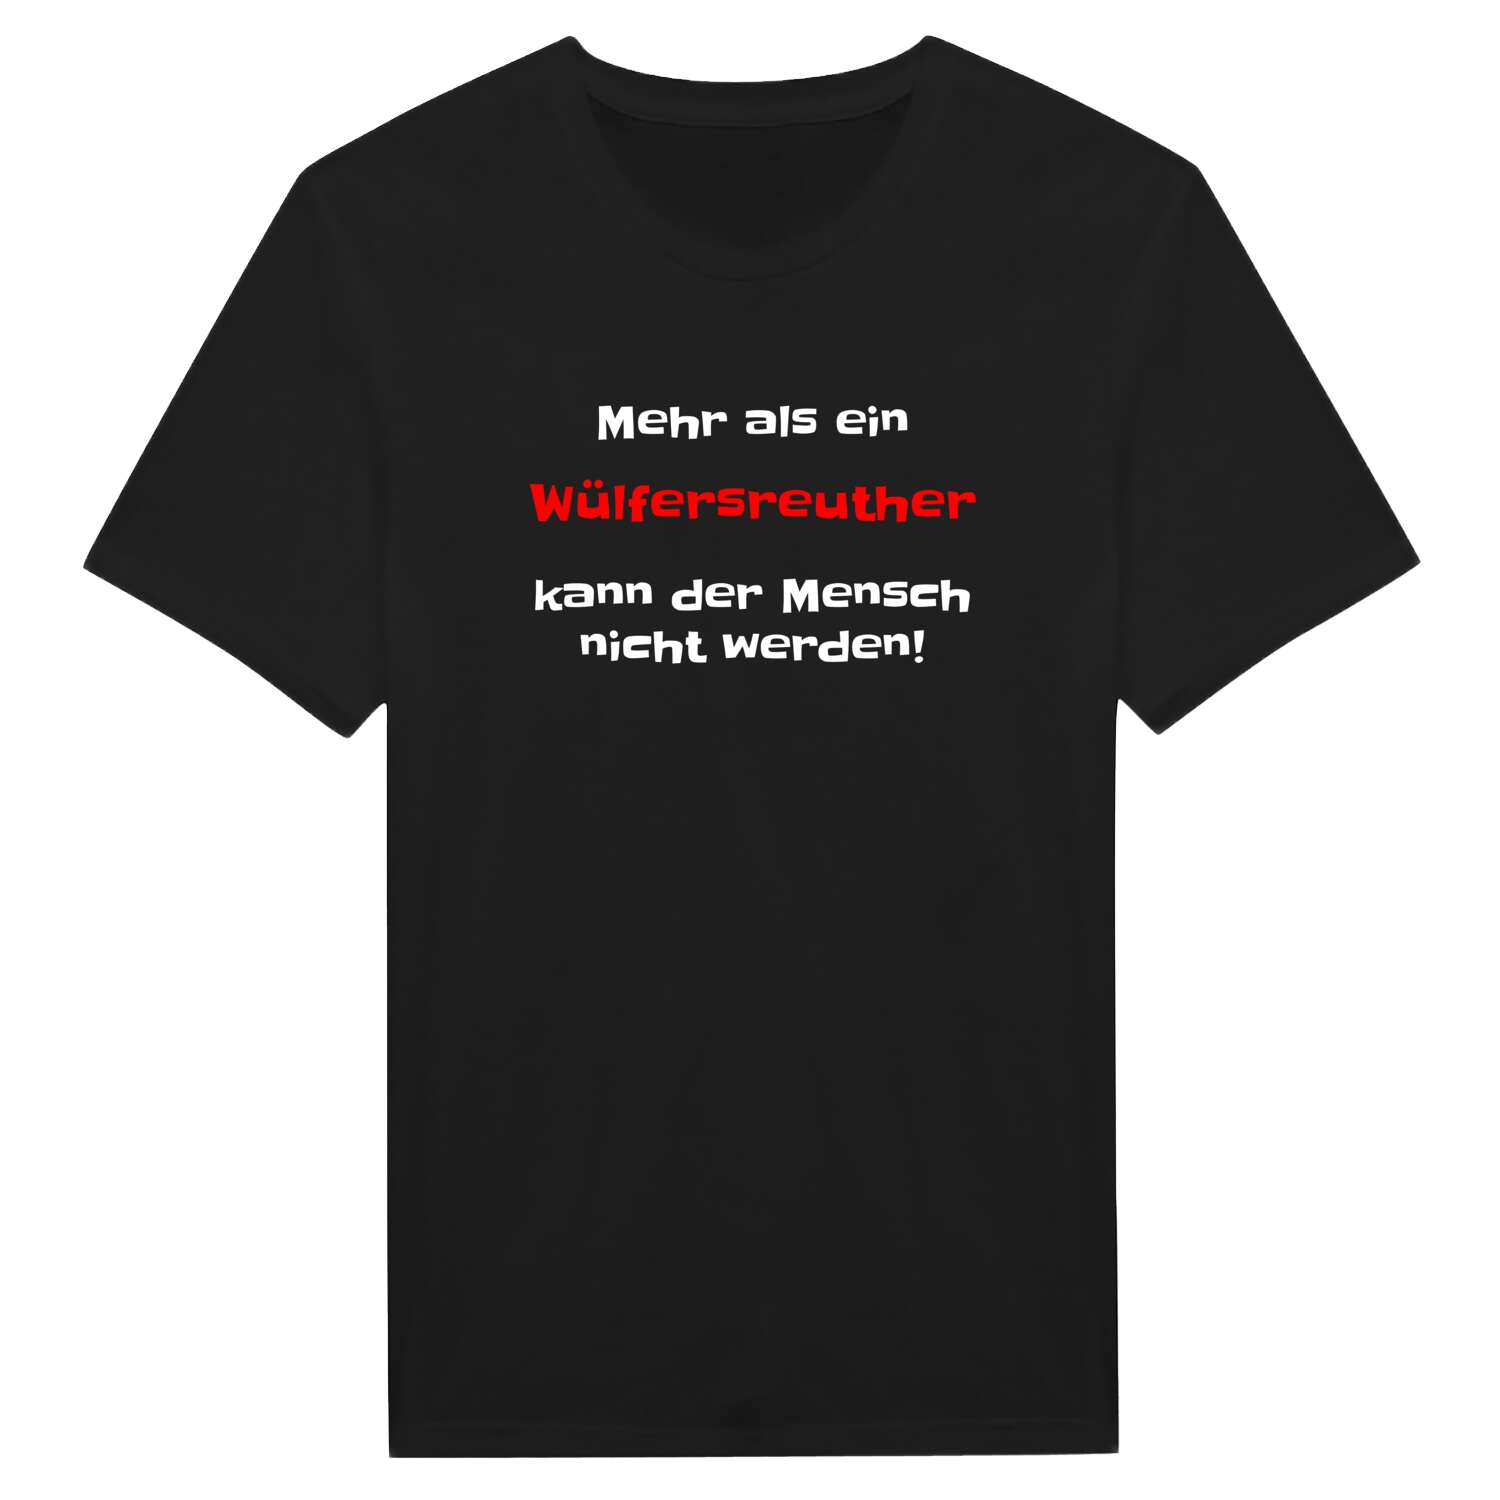 Wülfersreuth T-Shirt »Mehr als ein«